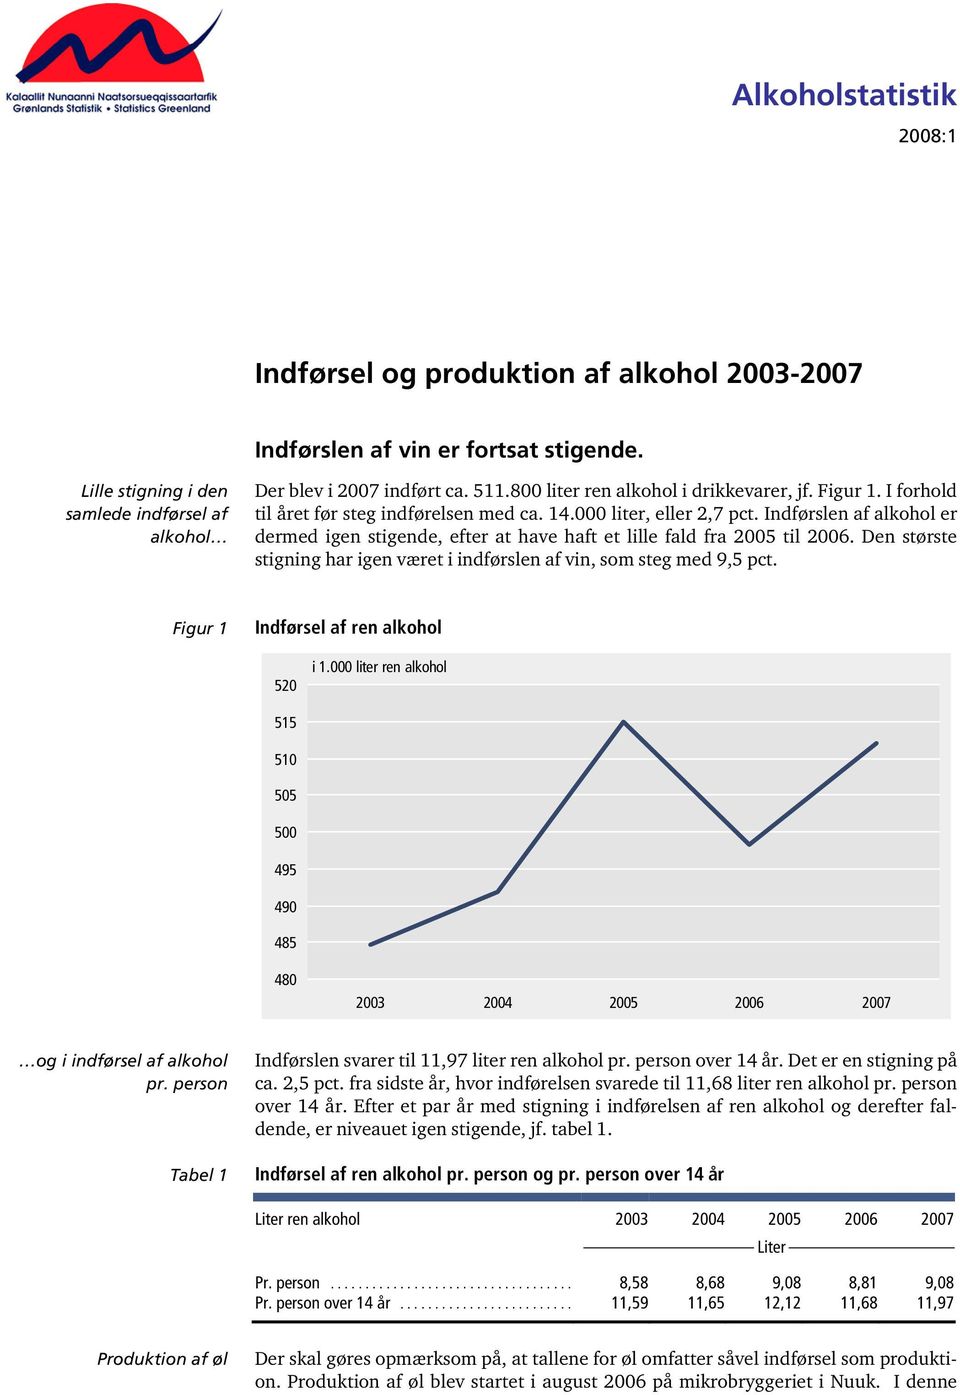 Indførslen af alkohol er dermed igen stigende, efter at have haft et lille fald fra 2005 til 2006. Den største stigning har igen været i indførslen af vin, som steg med 9,5 pct.